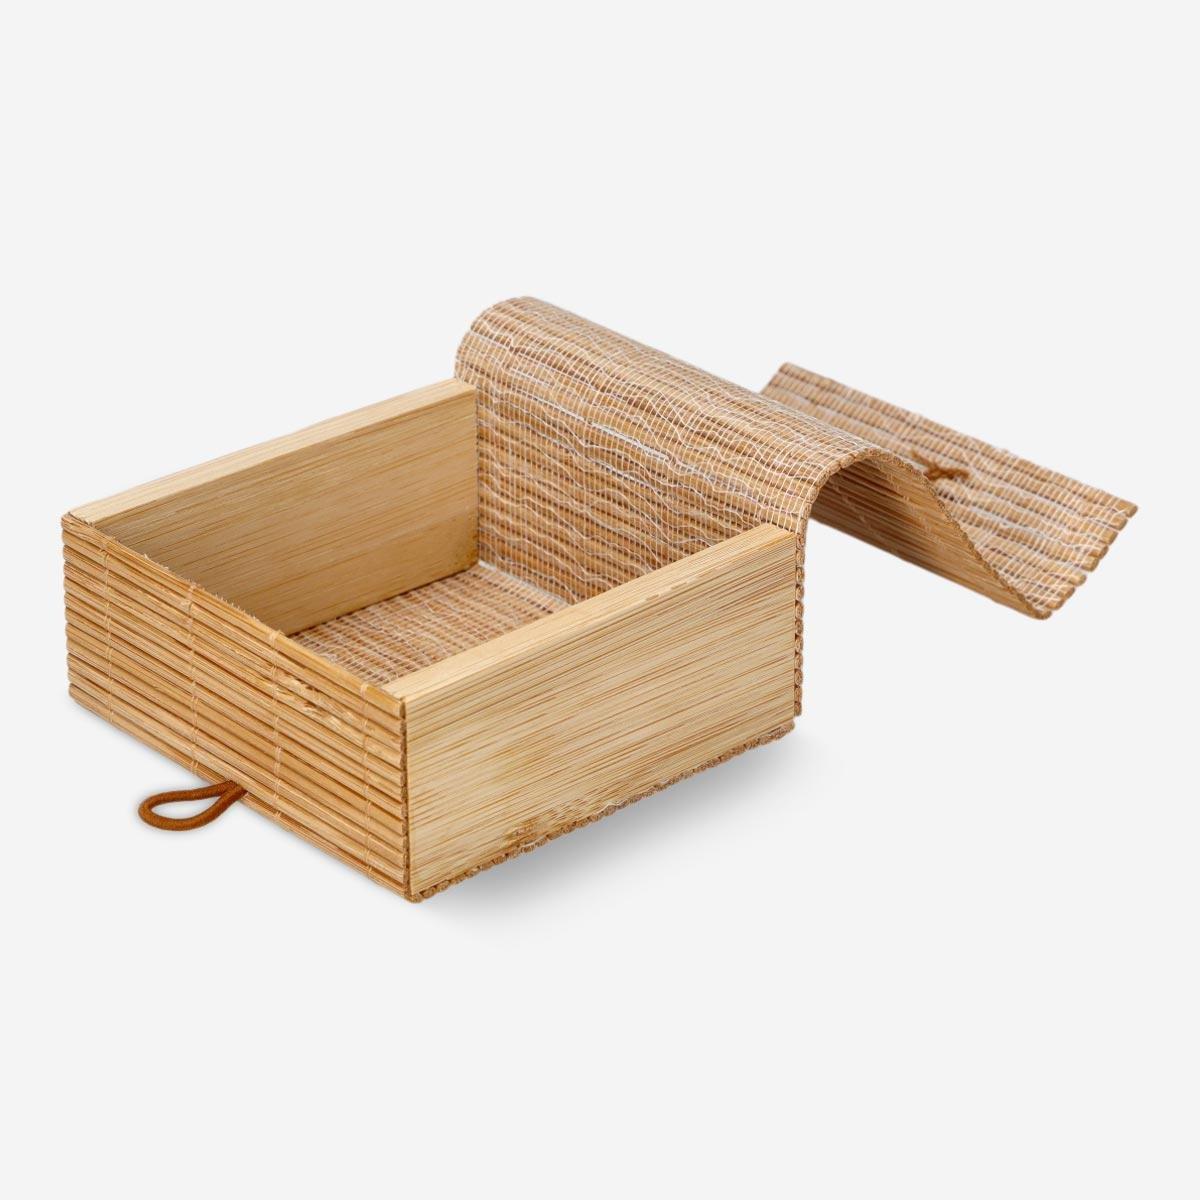 Wooden storage box. 9 cm